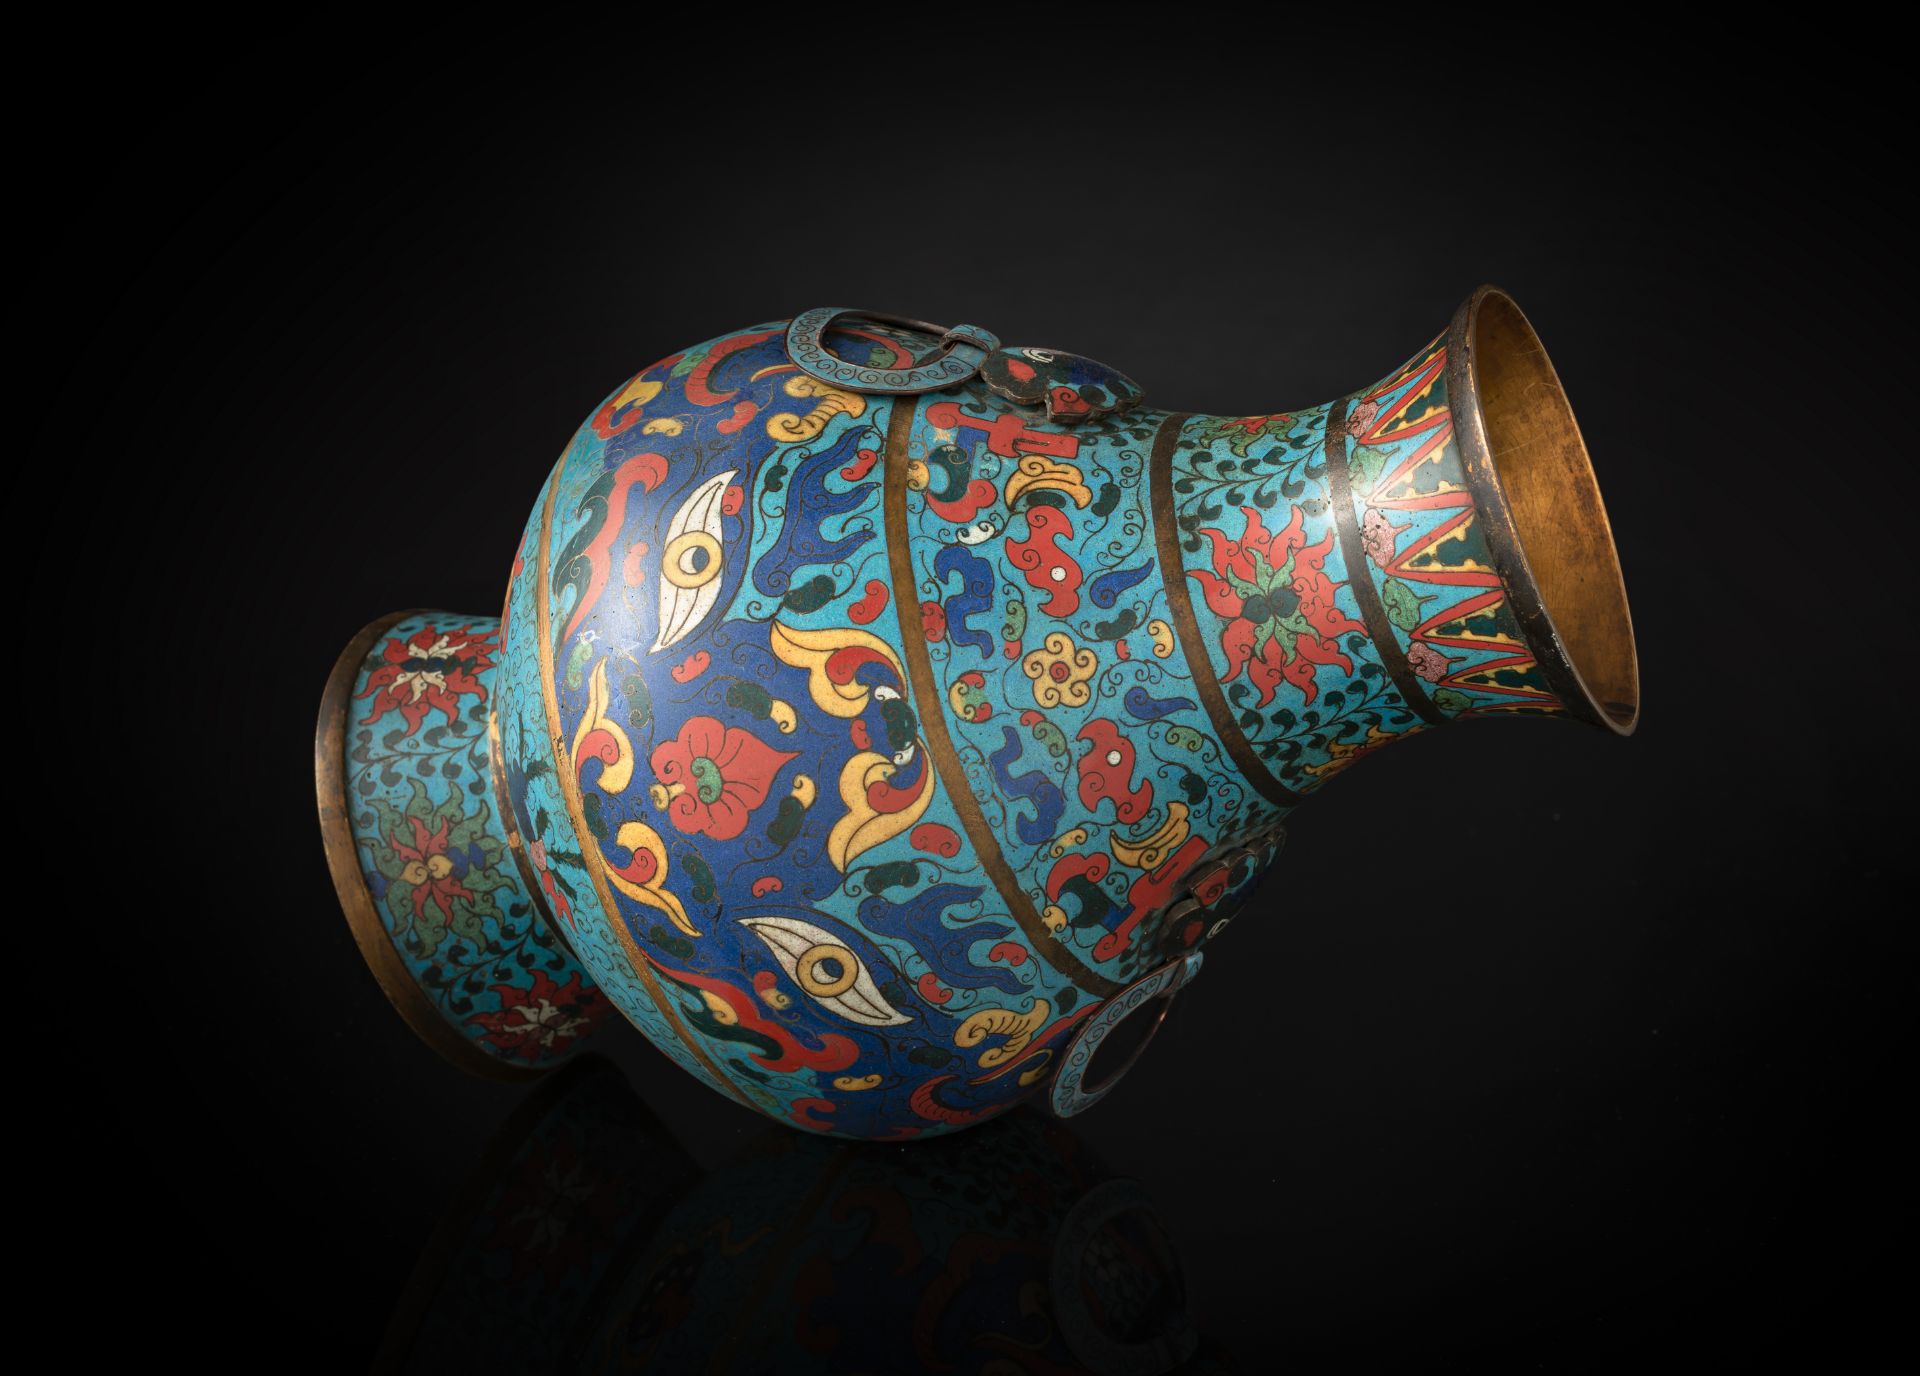 Seltene Cloisonné-Vase mit 'taotie' und Lotosdekor in 'hu'-Form - Bild 3 aus 3